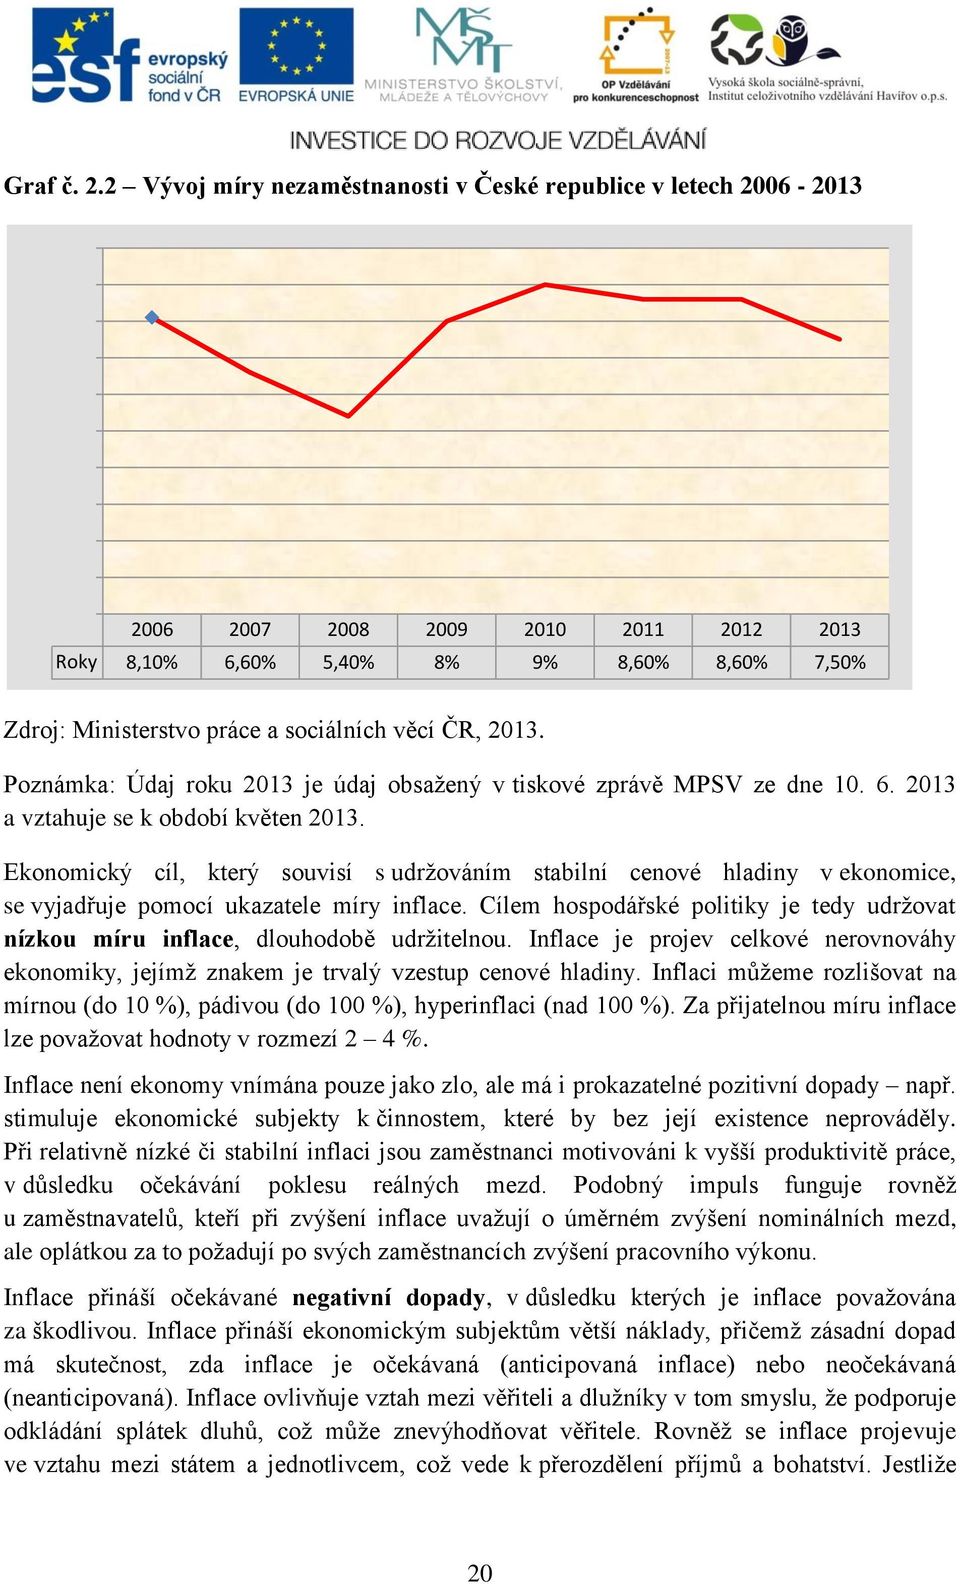 9% 8,60% 8,60% 7,50% Zdroj: Ministerstvo práce a sociálních věcí ČR, 2013. Poznámka: Údaj roku 2013 je údaj obsažený v tiskové zprávě MPSV ze dne 10. 6. 2013 a vztahuje se k období květen 2013.